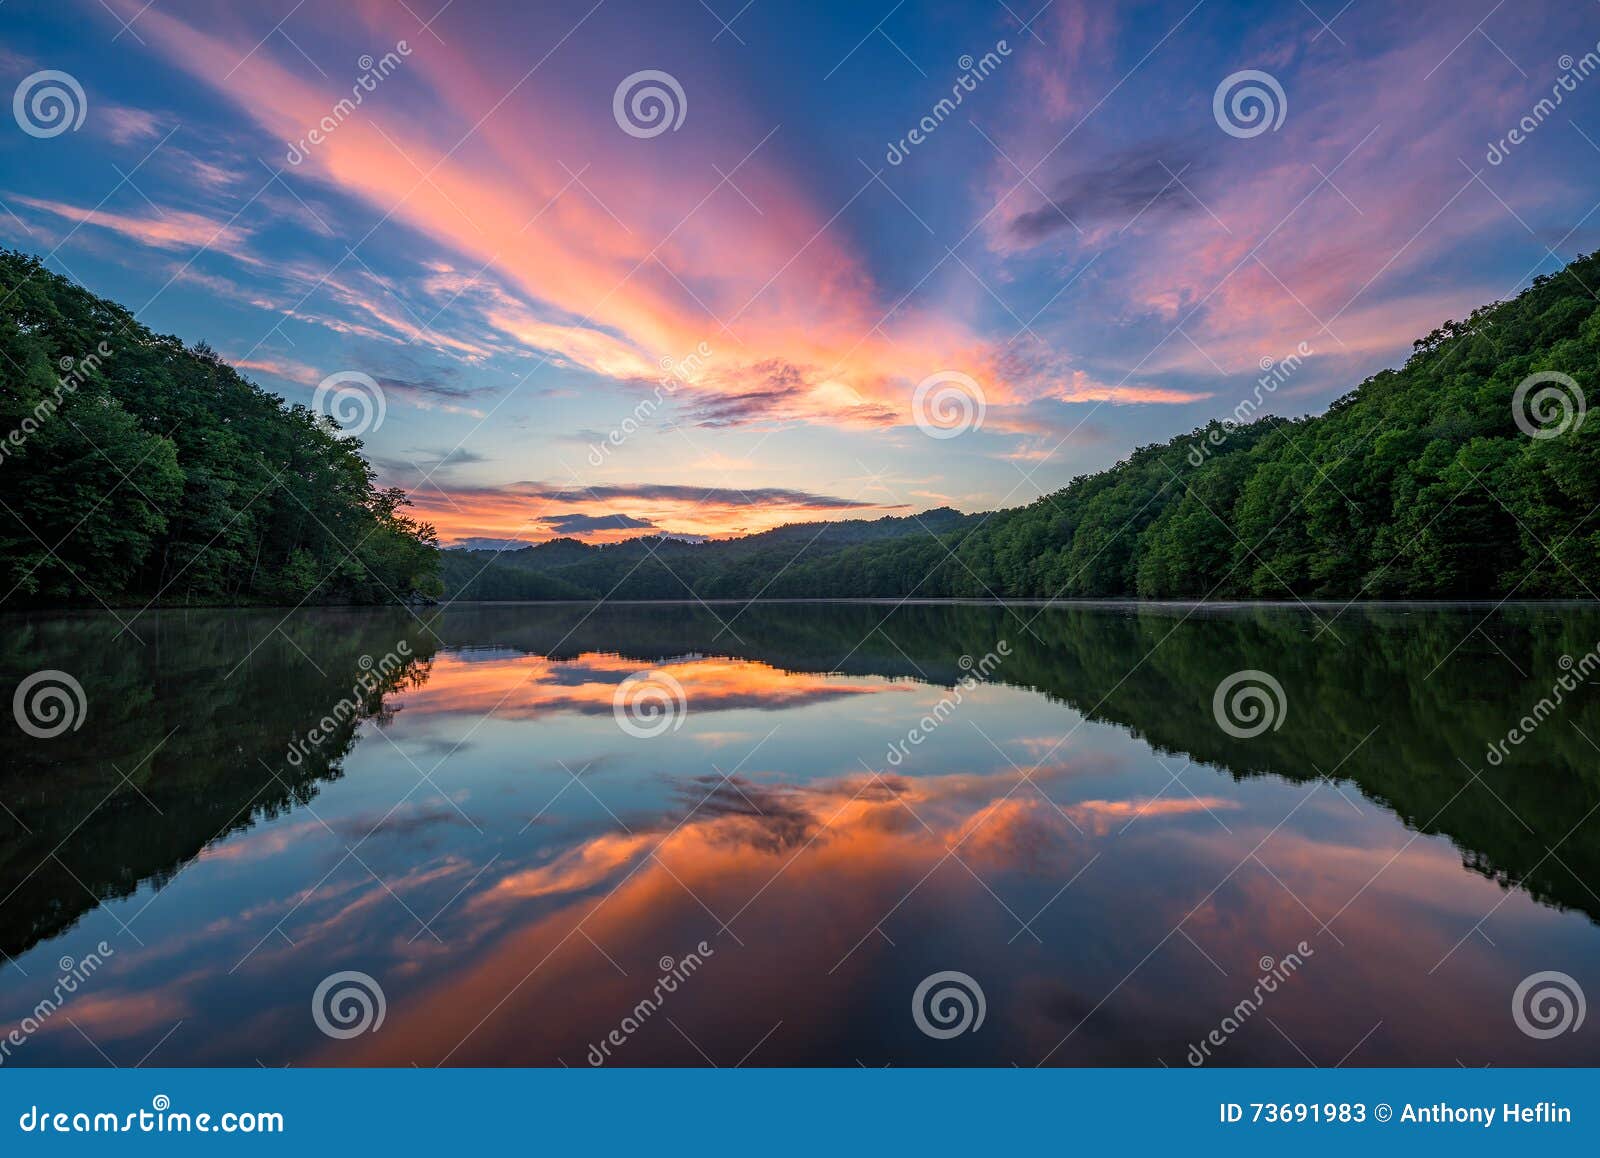 scenic sunset, mountain lake, kentucky